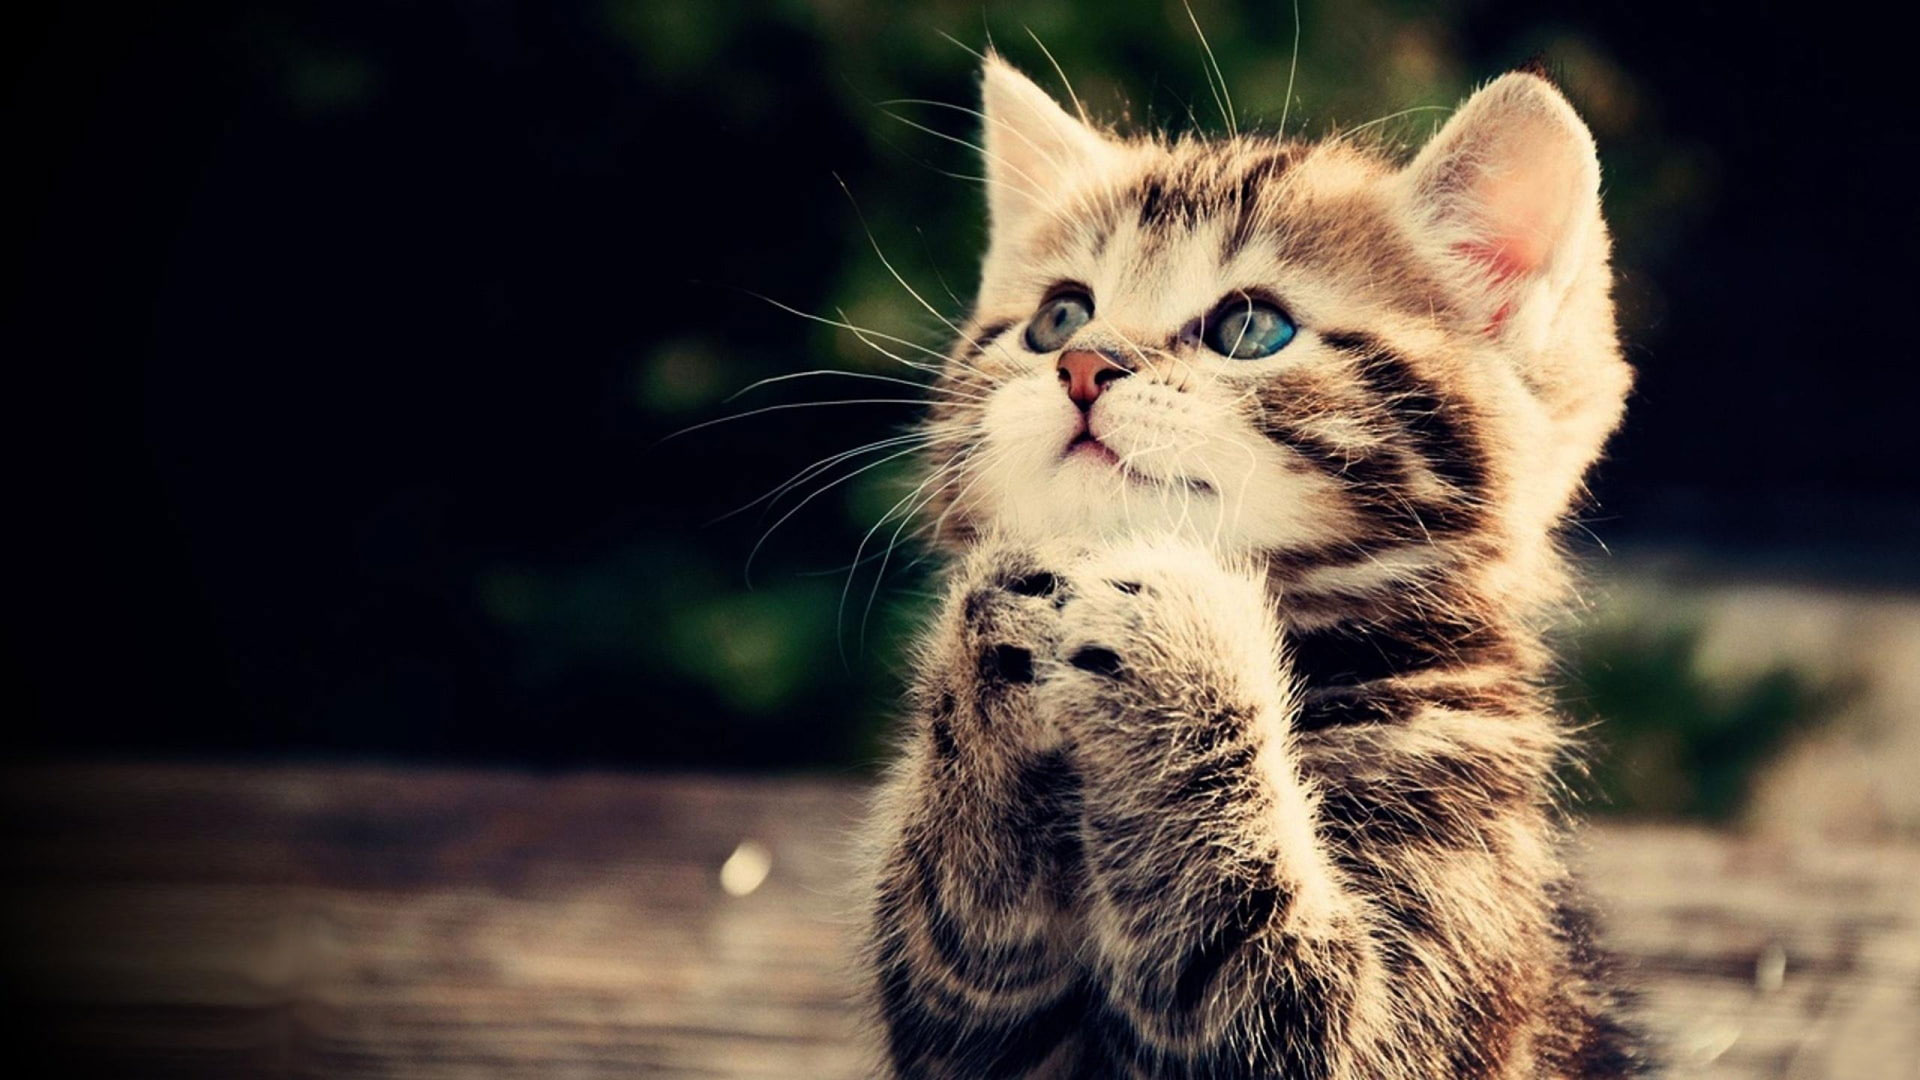 Prayer Kitten Wallpaper, Cat, Animal, Cute, Brown Tabby Kitten • Wallpaper For You